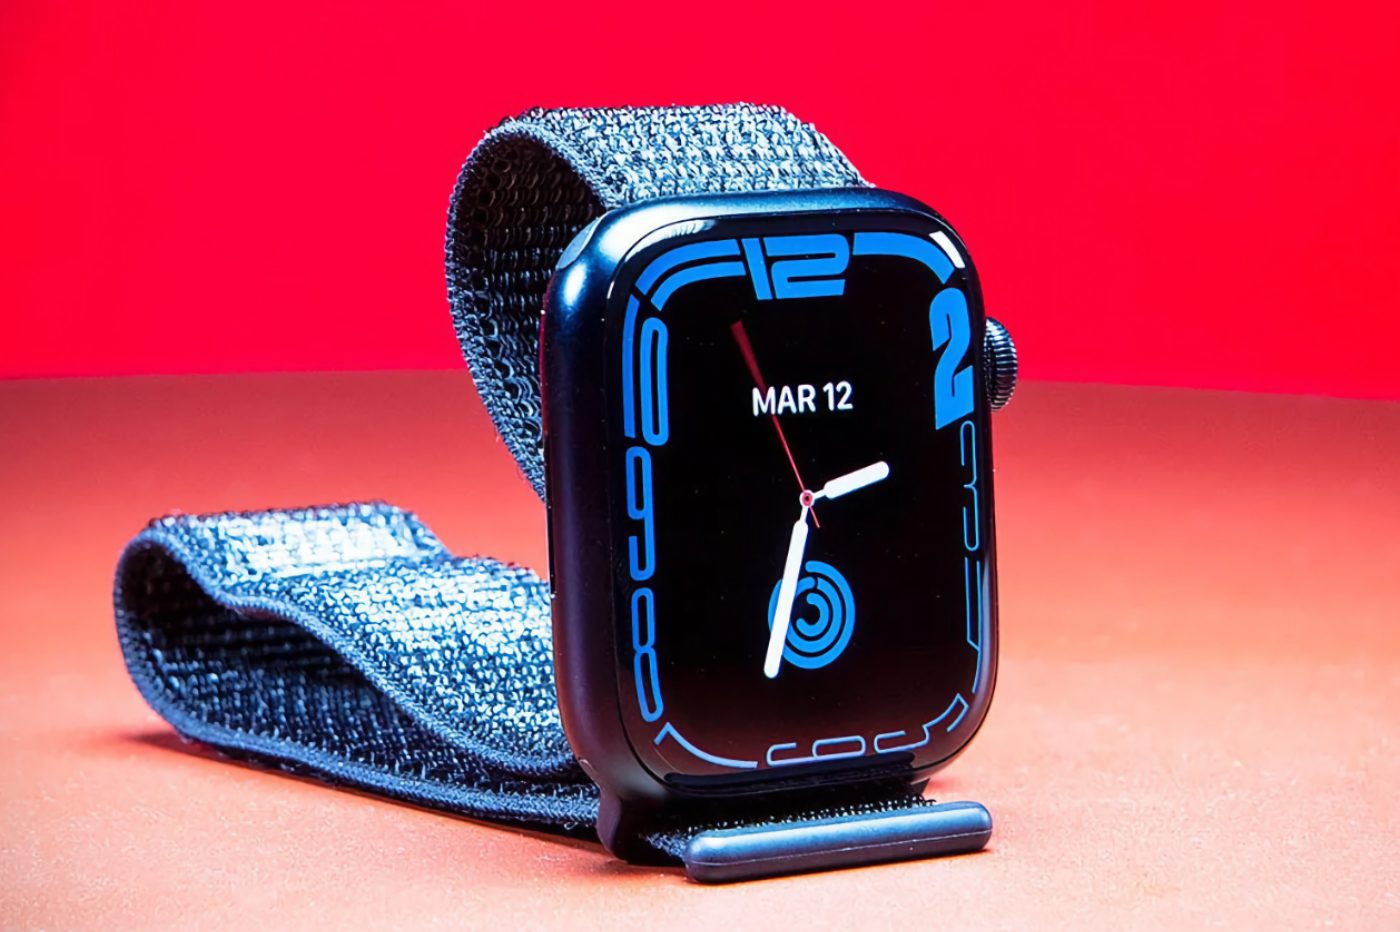 L'Apple Watch visée par une plainte pour « préjugés raciaux »